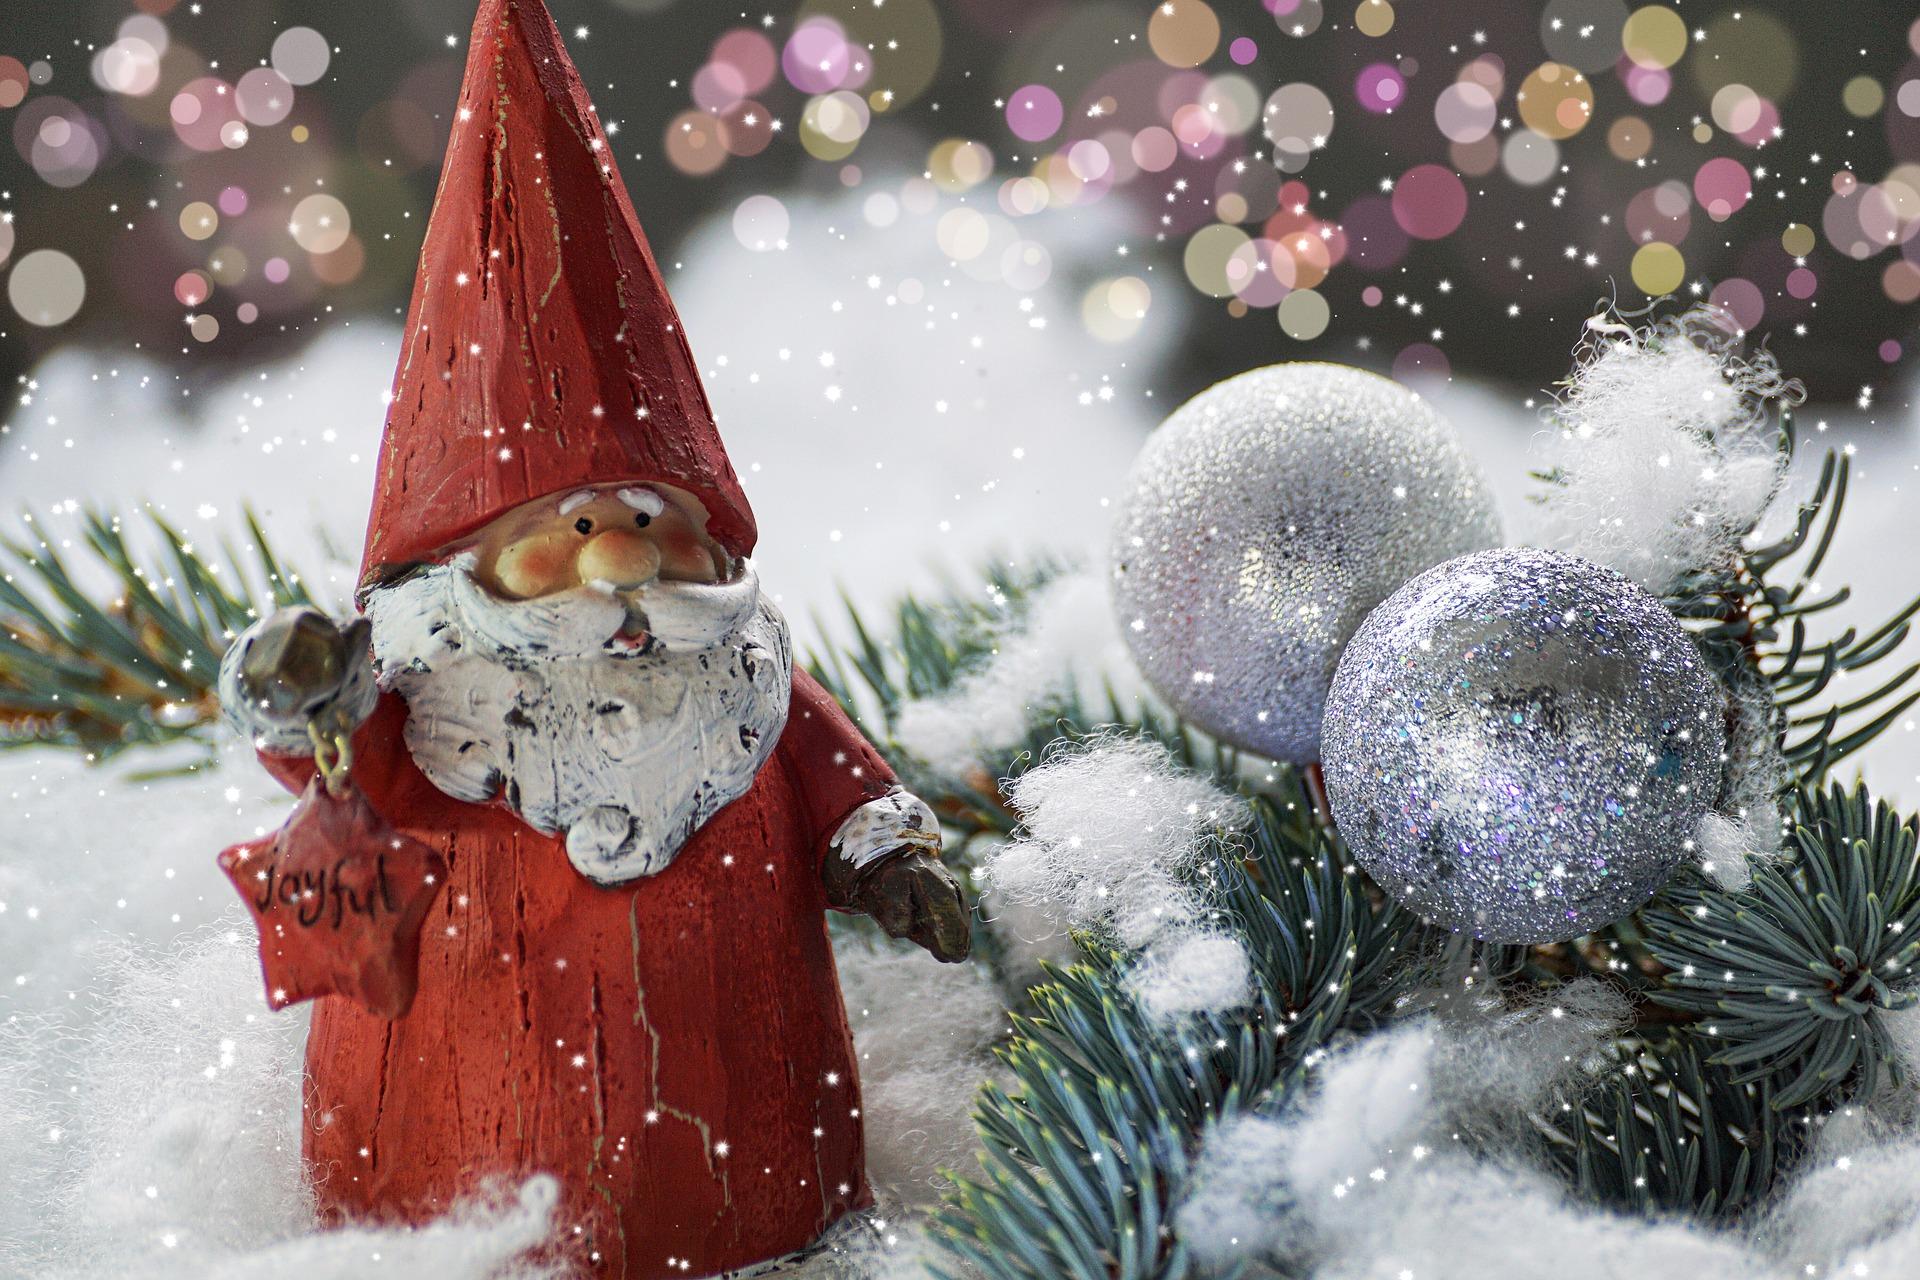 figurka mikołaja z białą, długą brodą, w czerwonym ubraniu i czapce stoi w sniegu obok gałązek przybranych bombkami